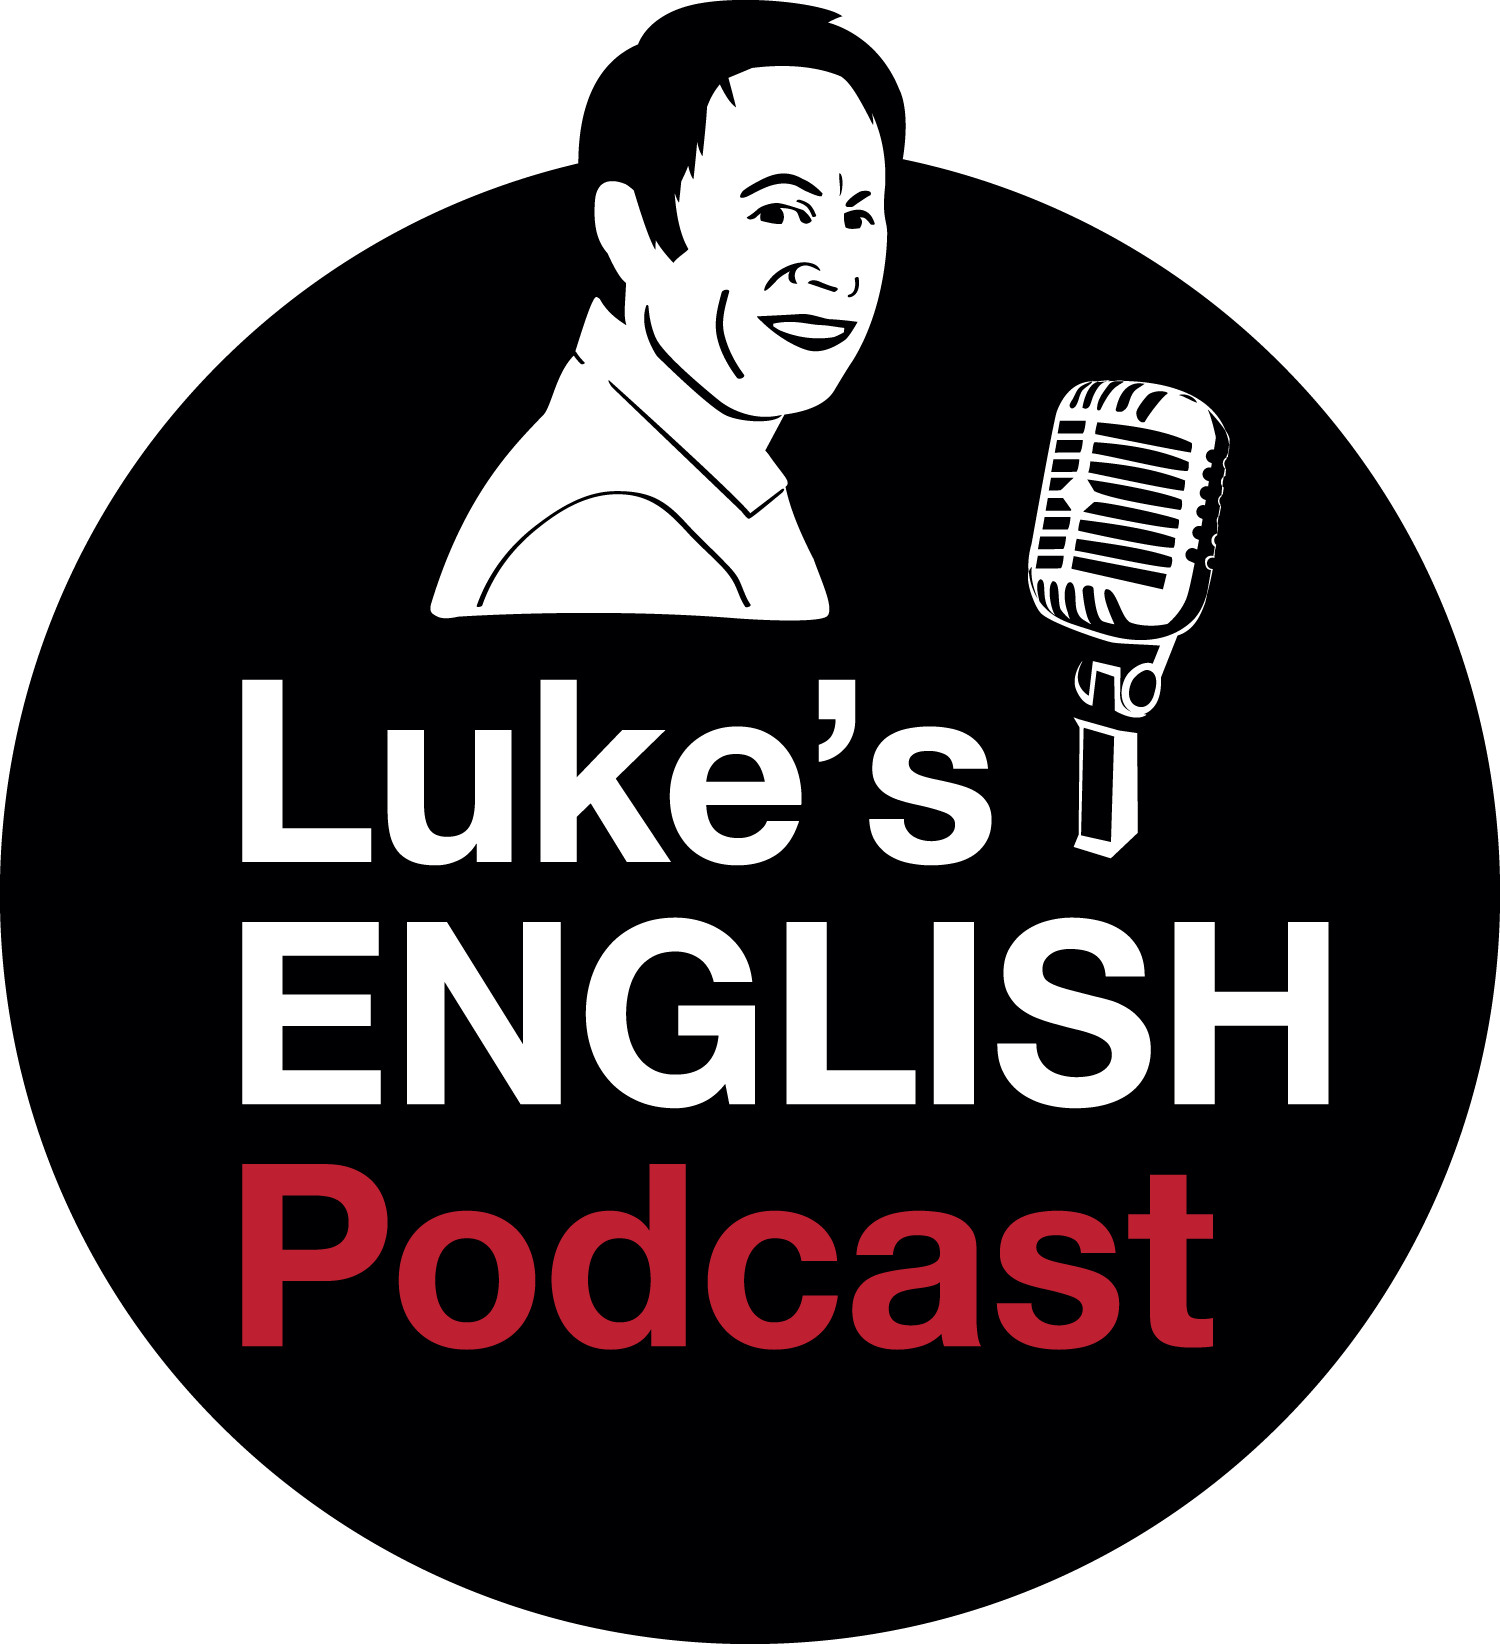 Luke's English Podcast. Слушать подкасты на английском